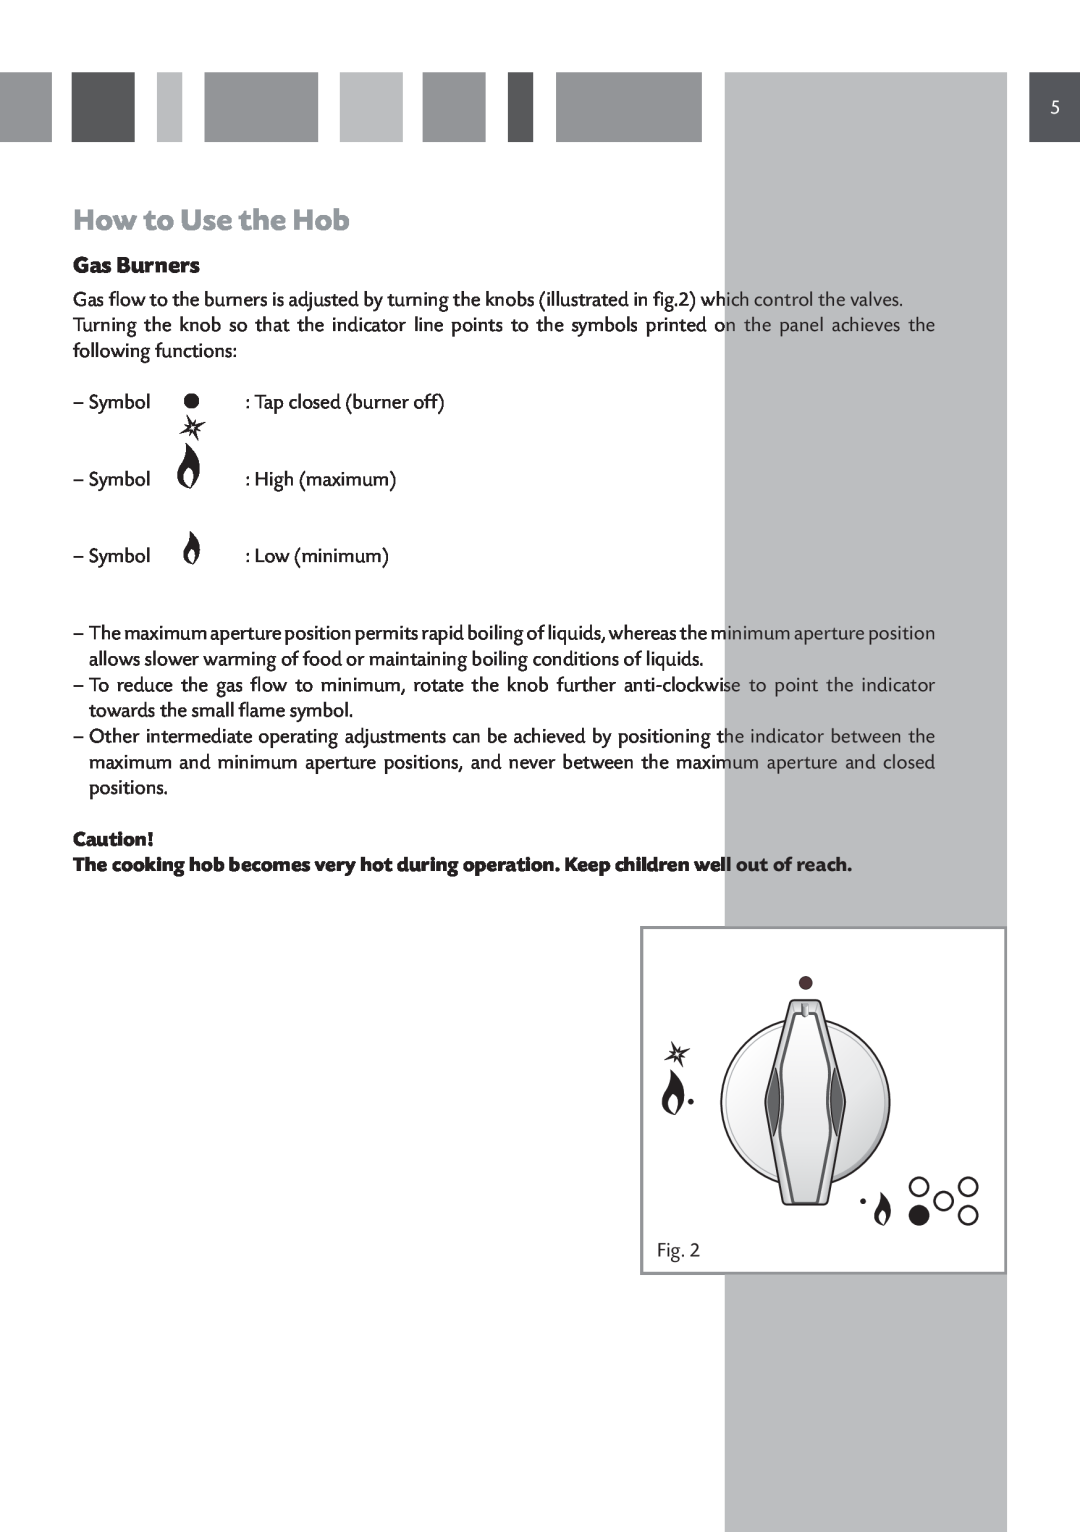 CDA HCG 741, HCG 731 manual How to Use the Hob, Gas Burners 